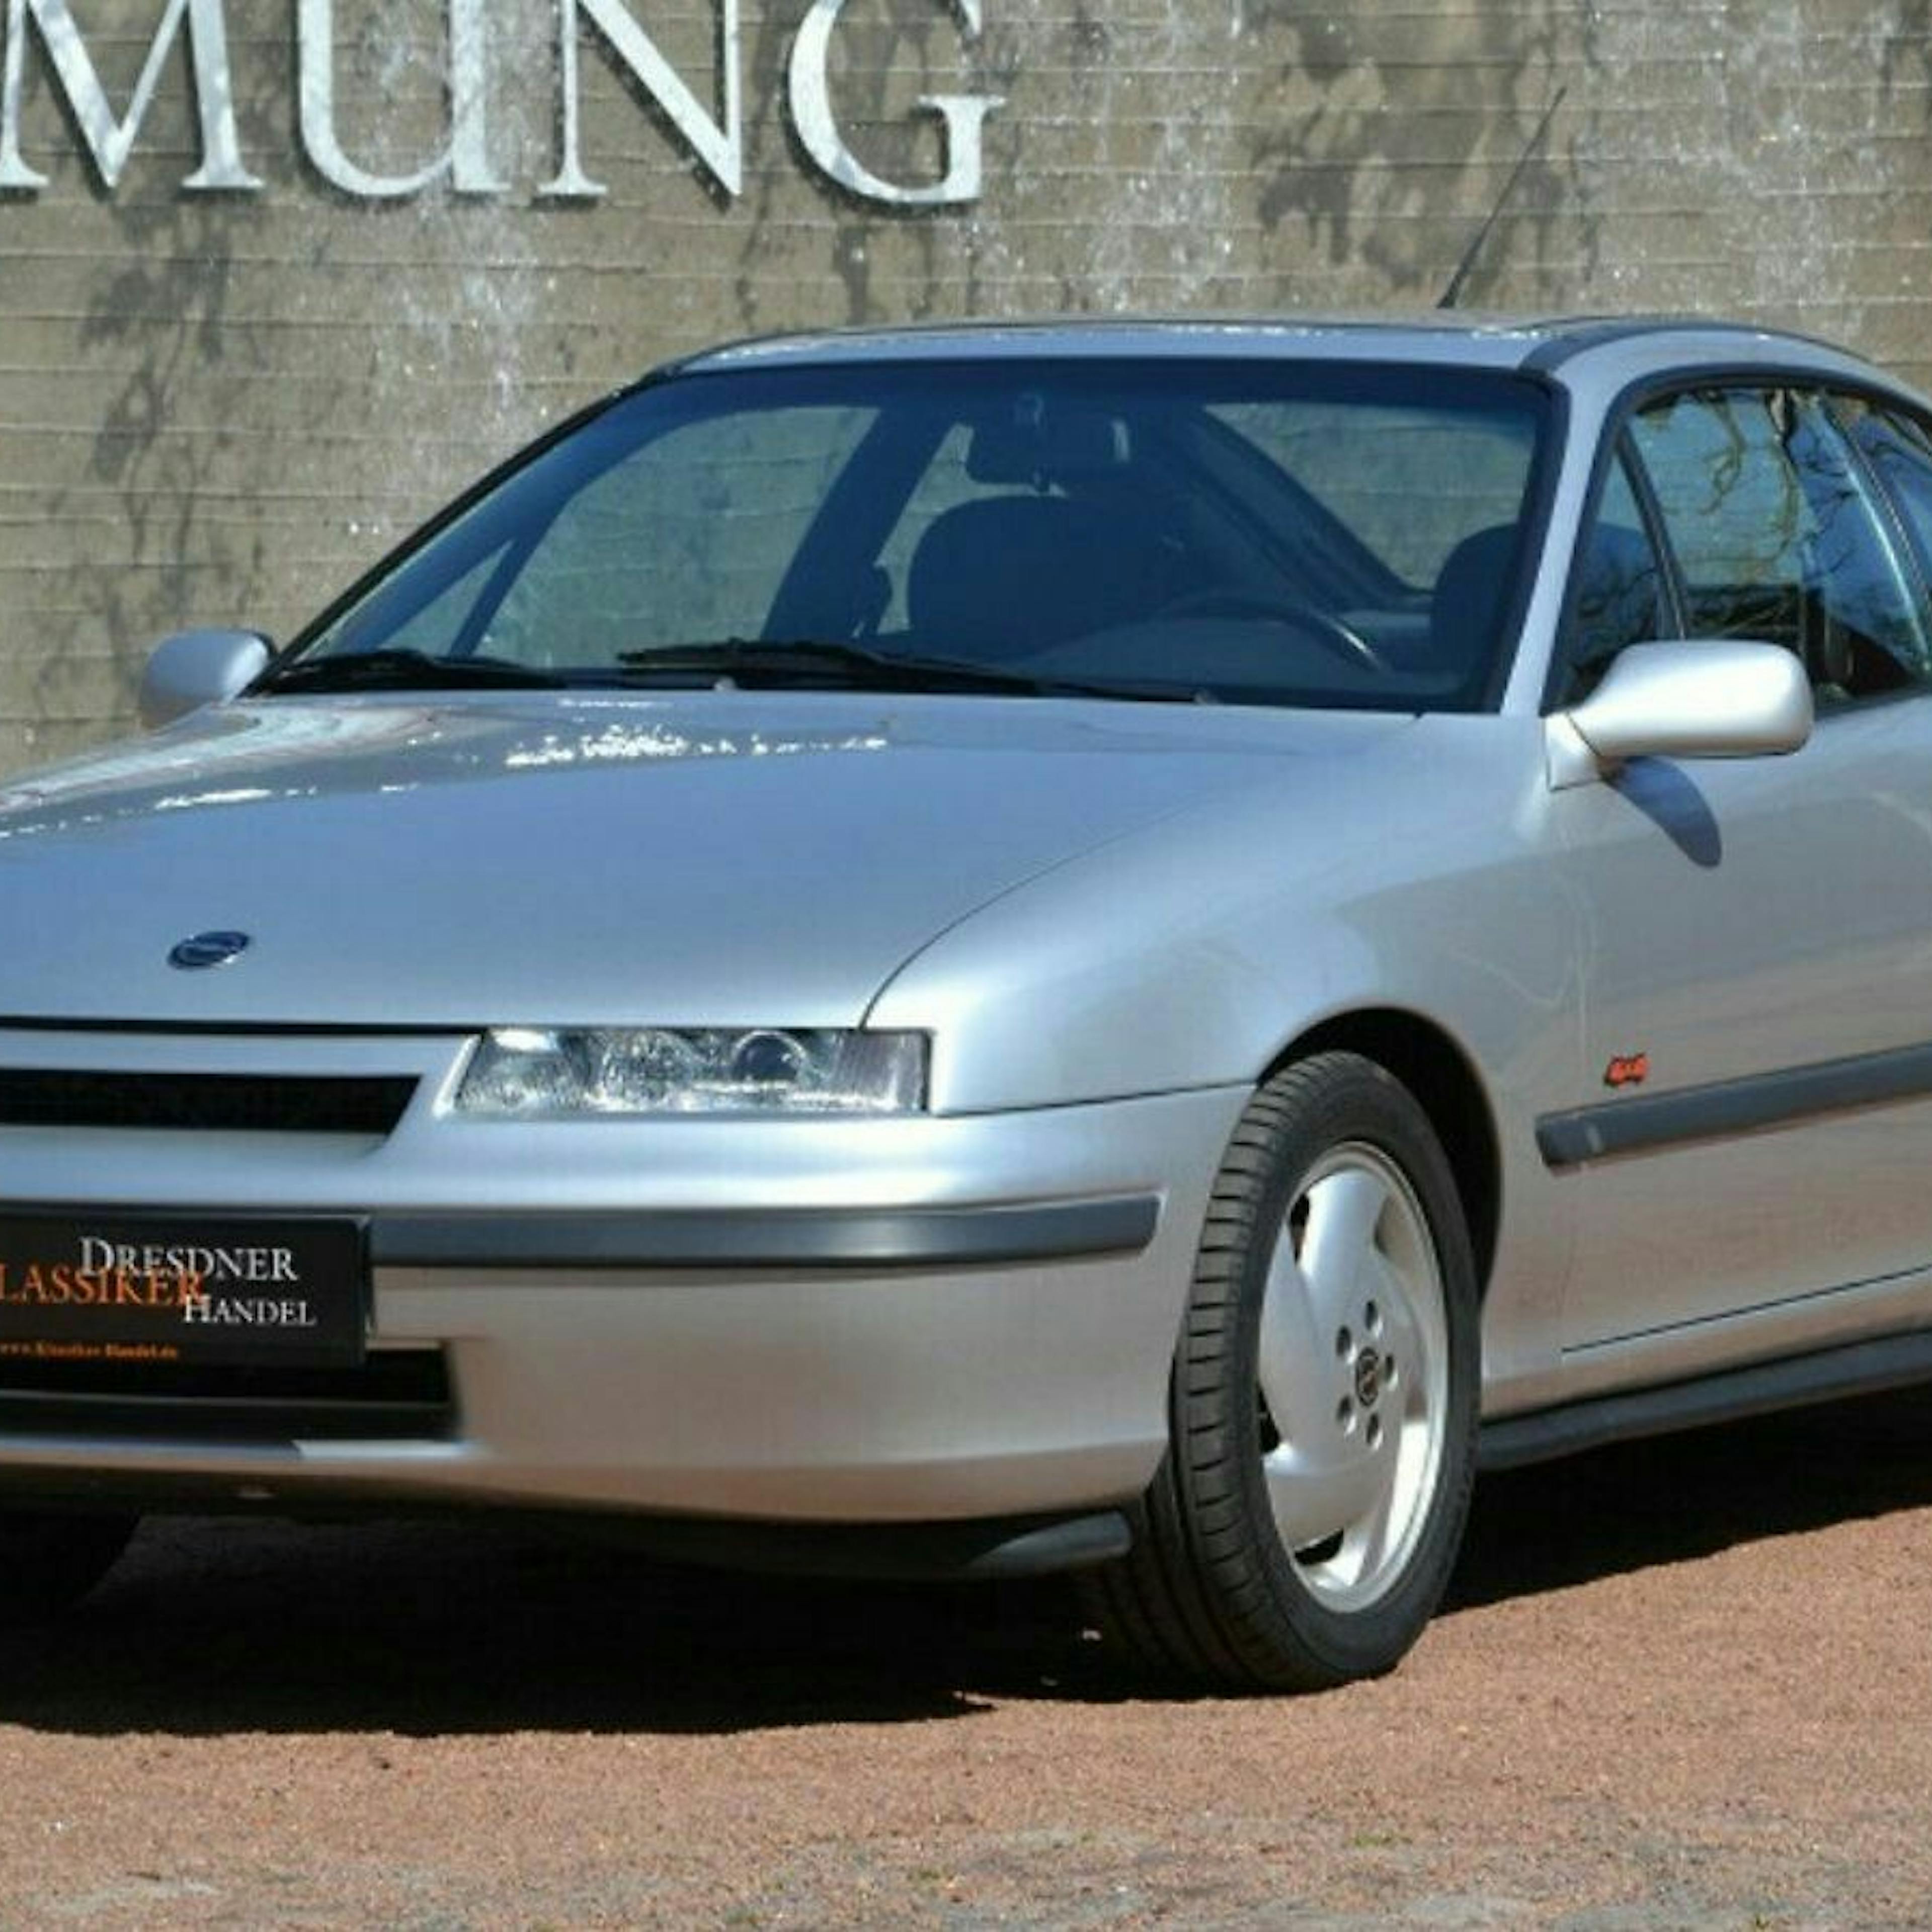 Ein silberner Opel Calibra Turbo Oldtimer steht vor einer grauen Wand.